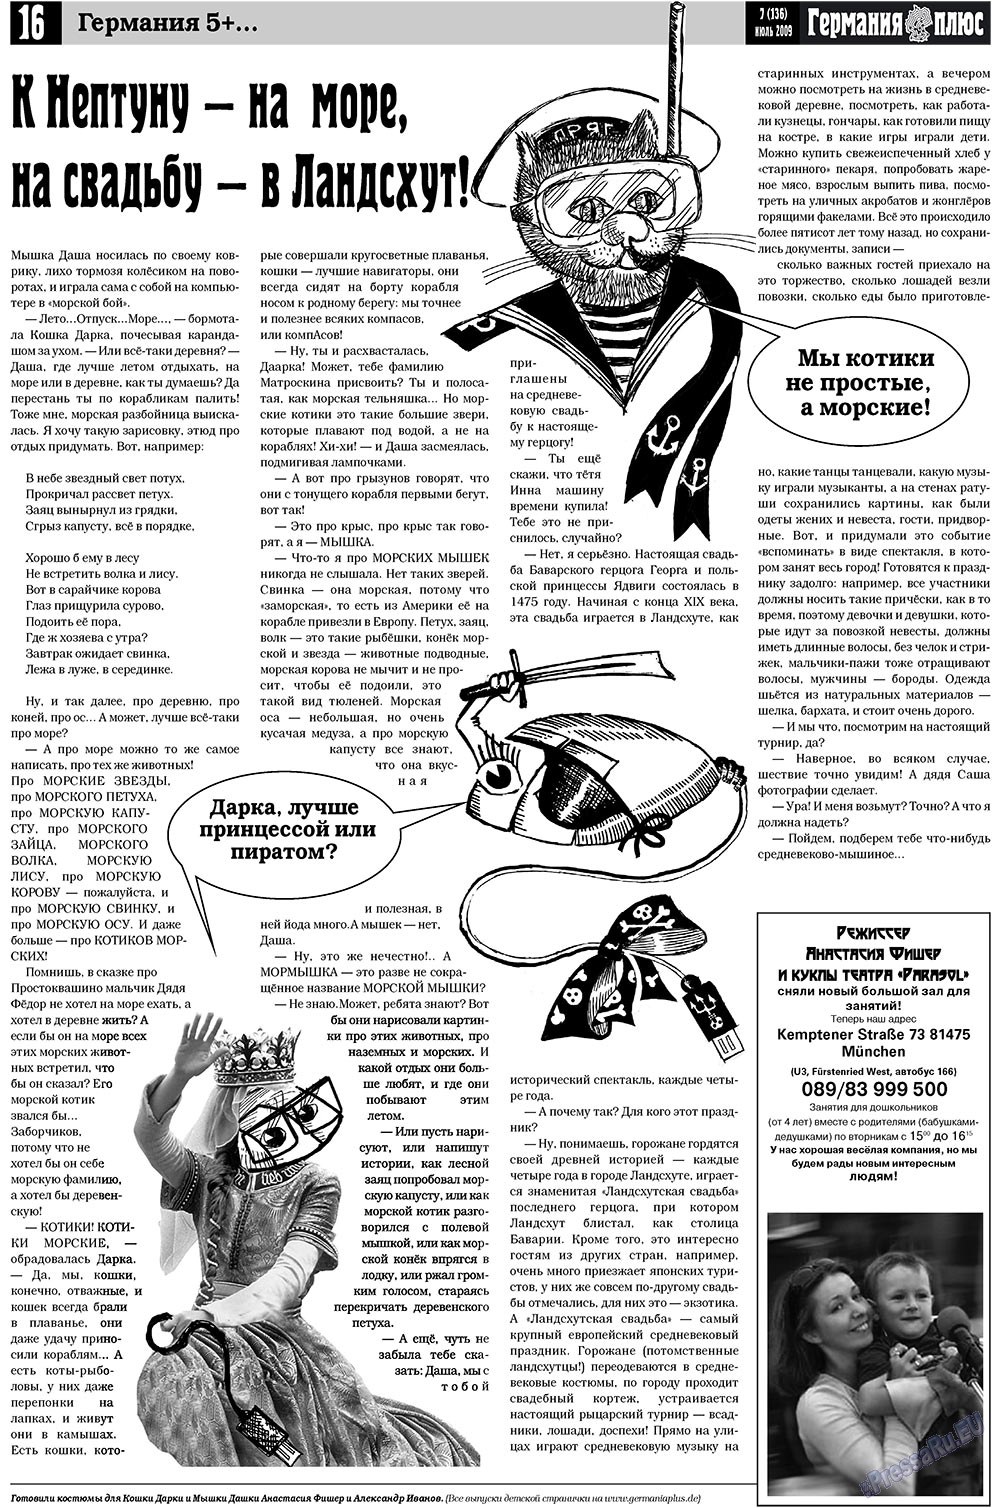 Германия плюс (газета). 2009 год, номер 7, стр. 20